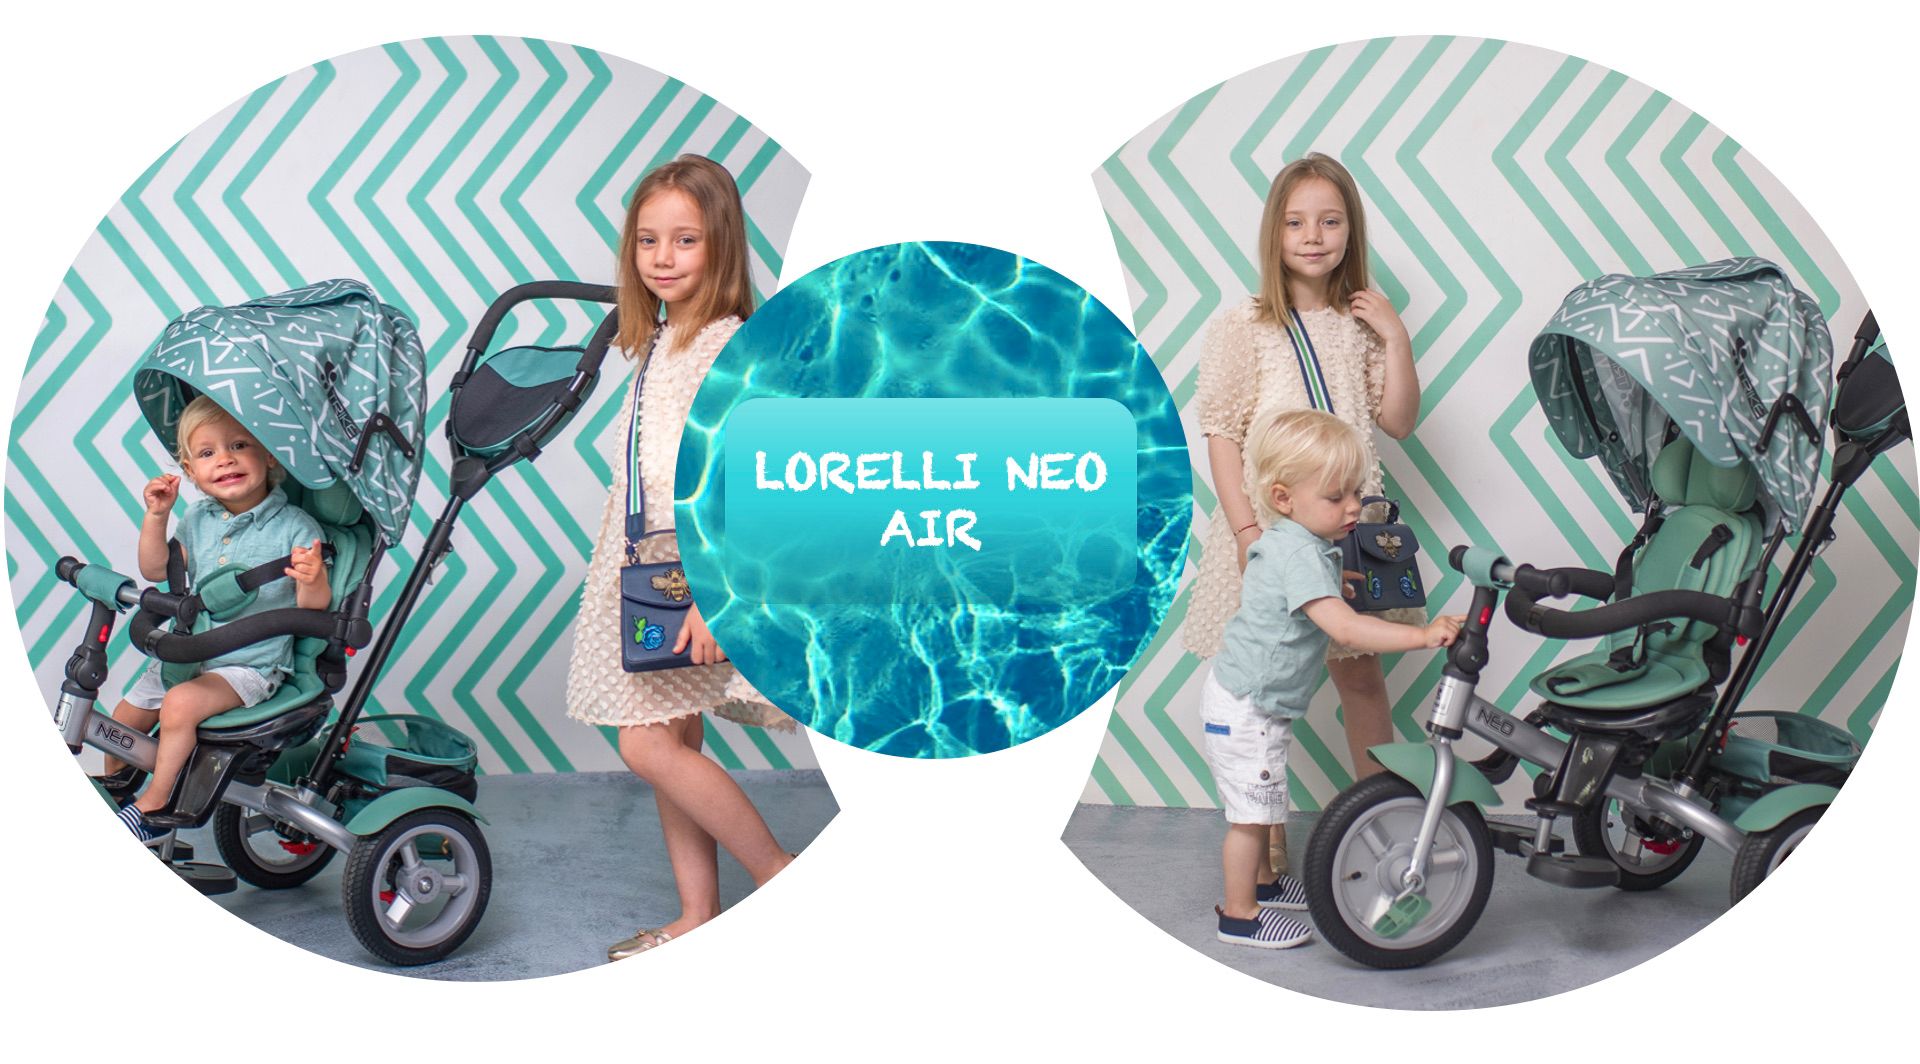 LORELLI NEO AIR Dječji Tricikl - za potpuni osjećaj slobode!